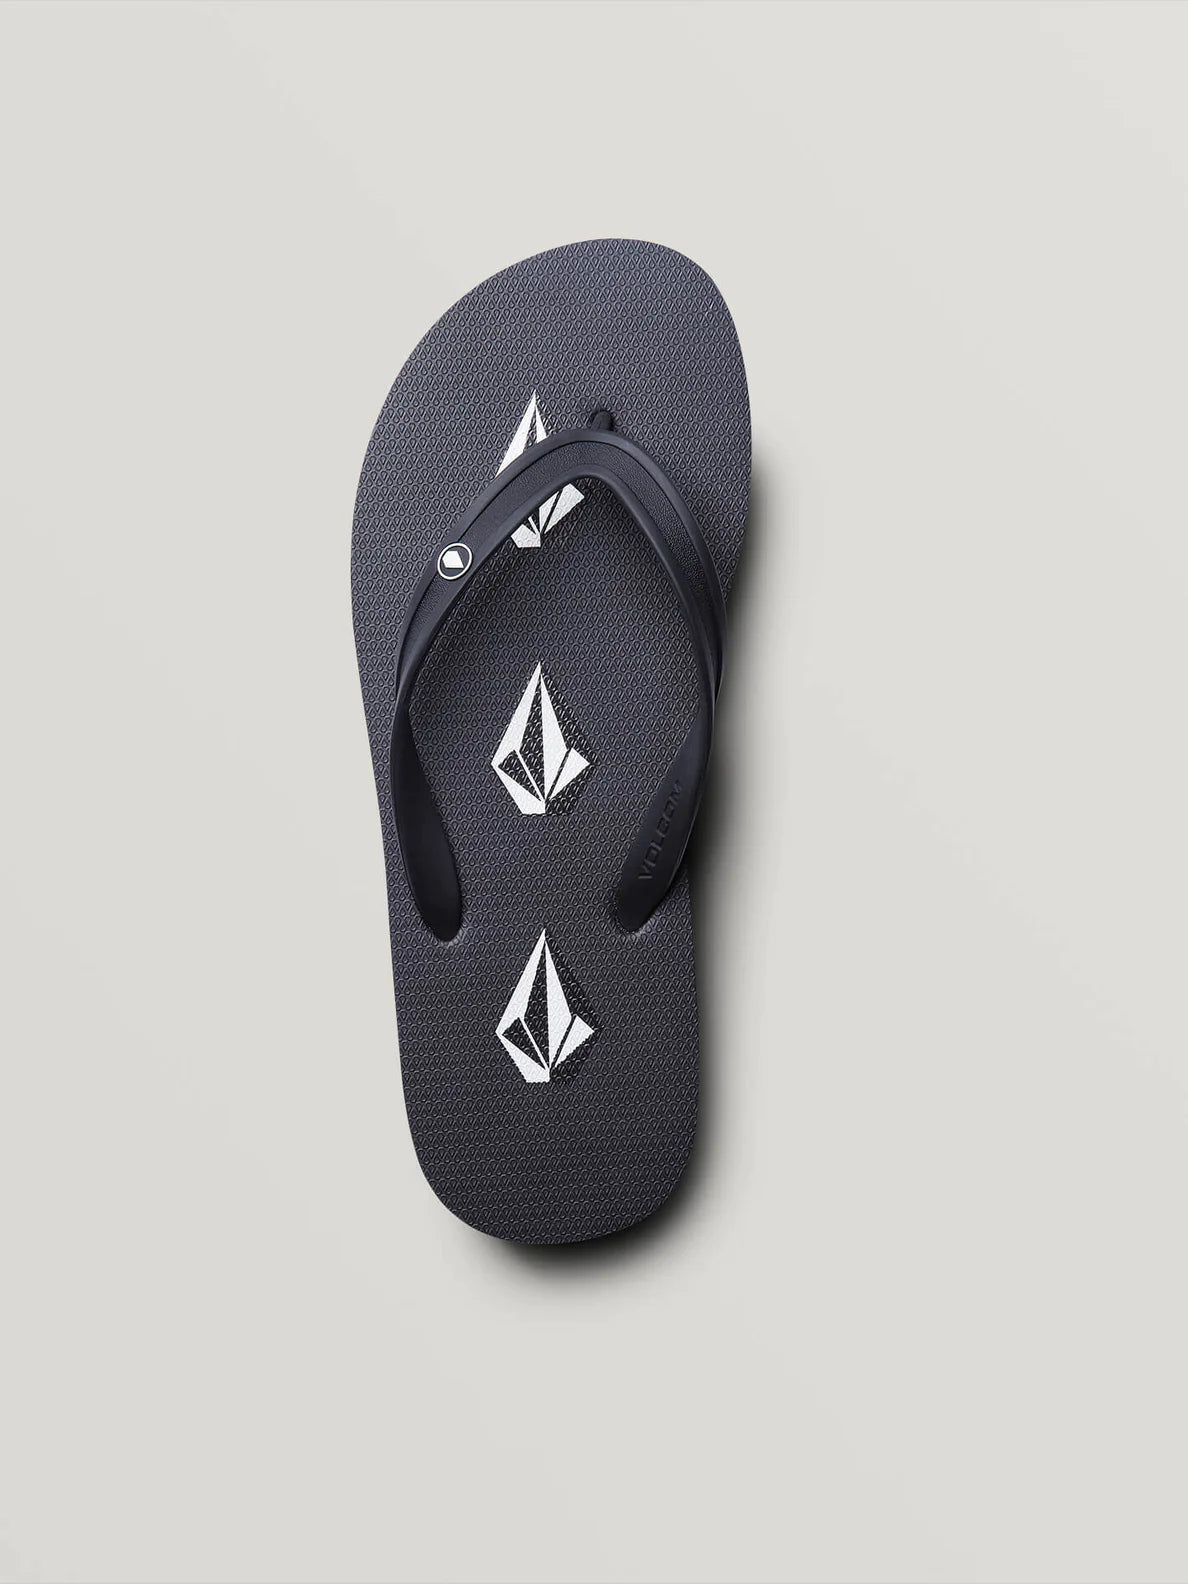 Rocker 2 Steinige schwarze Sandalen | Flip-Flops | Meistverkaufte Produkte | Neue Produkte | Neueste Produkte | Sammlung_Zalando | Schuhwerk | Volcom-Shop | surfdevils.com